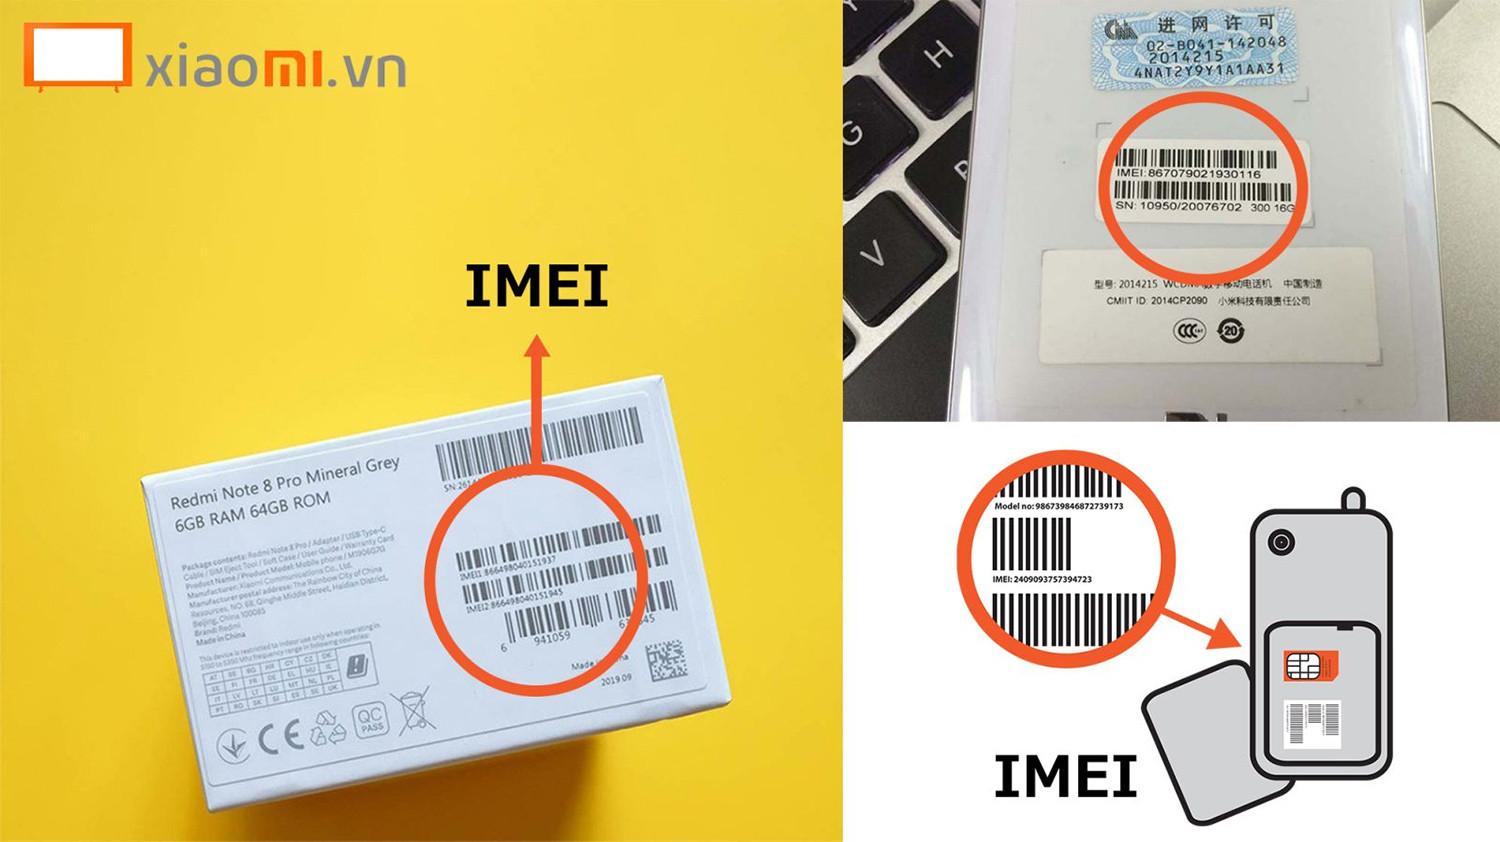 Bạn có thể xem mã IMEI trực tiếp trên thân máy